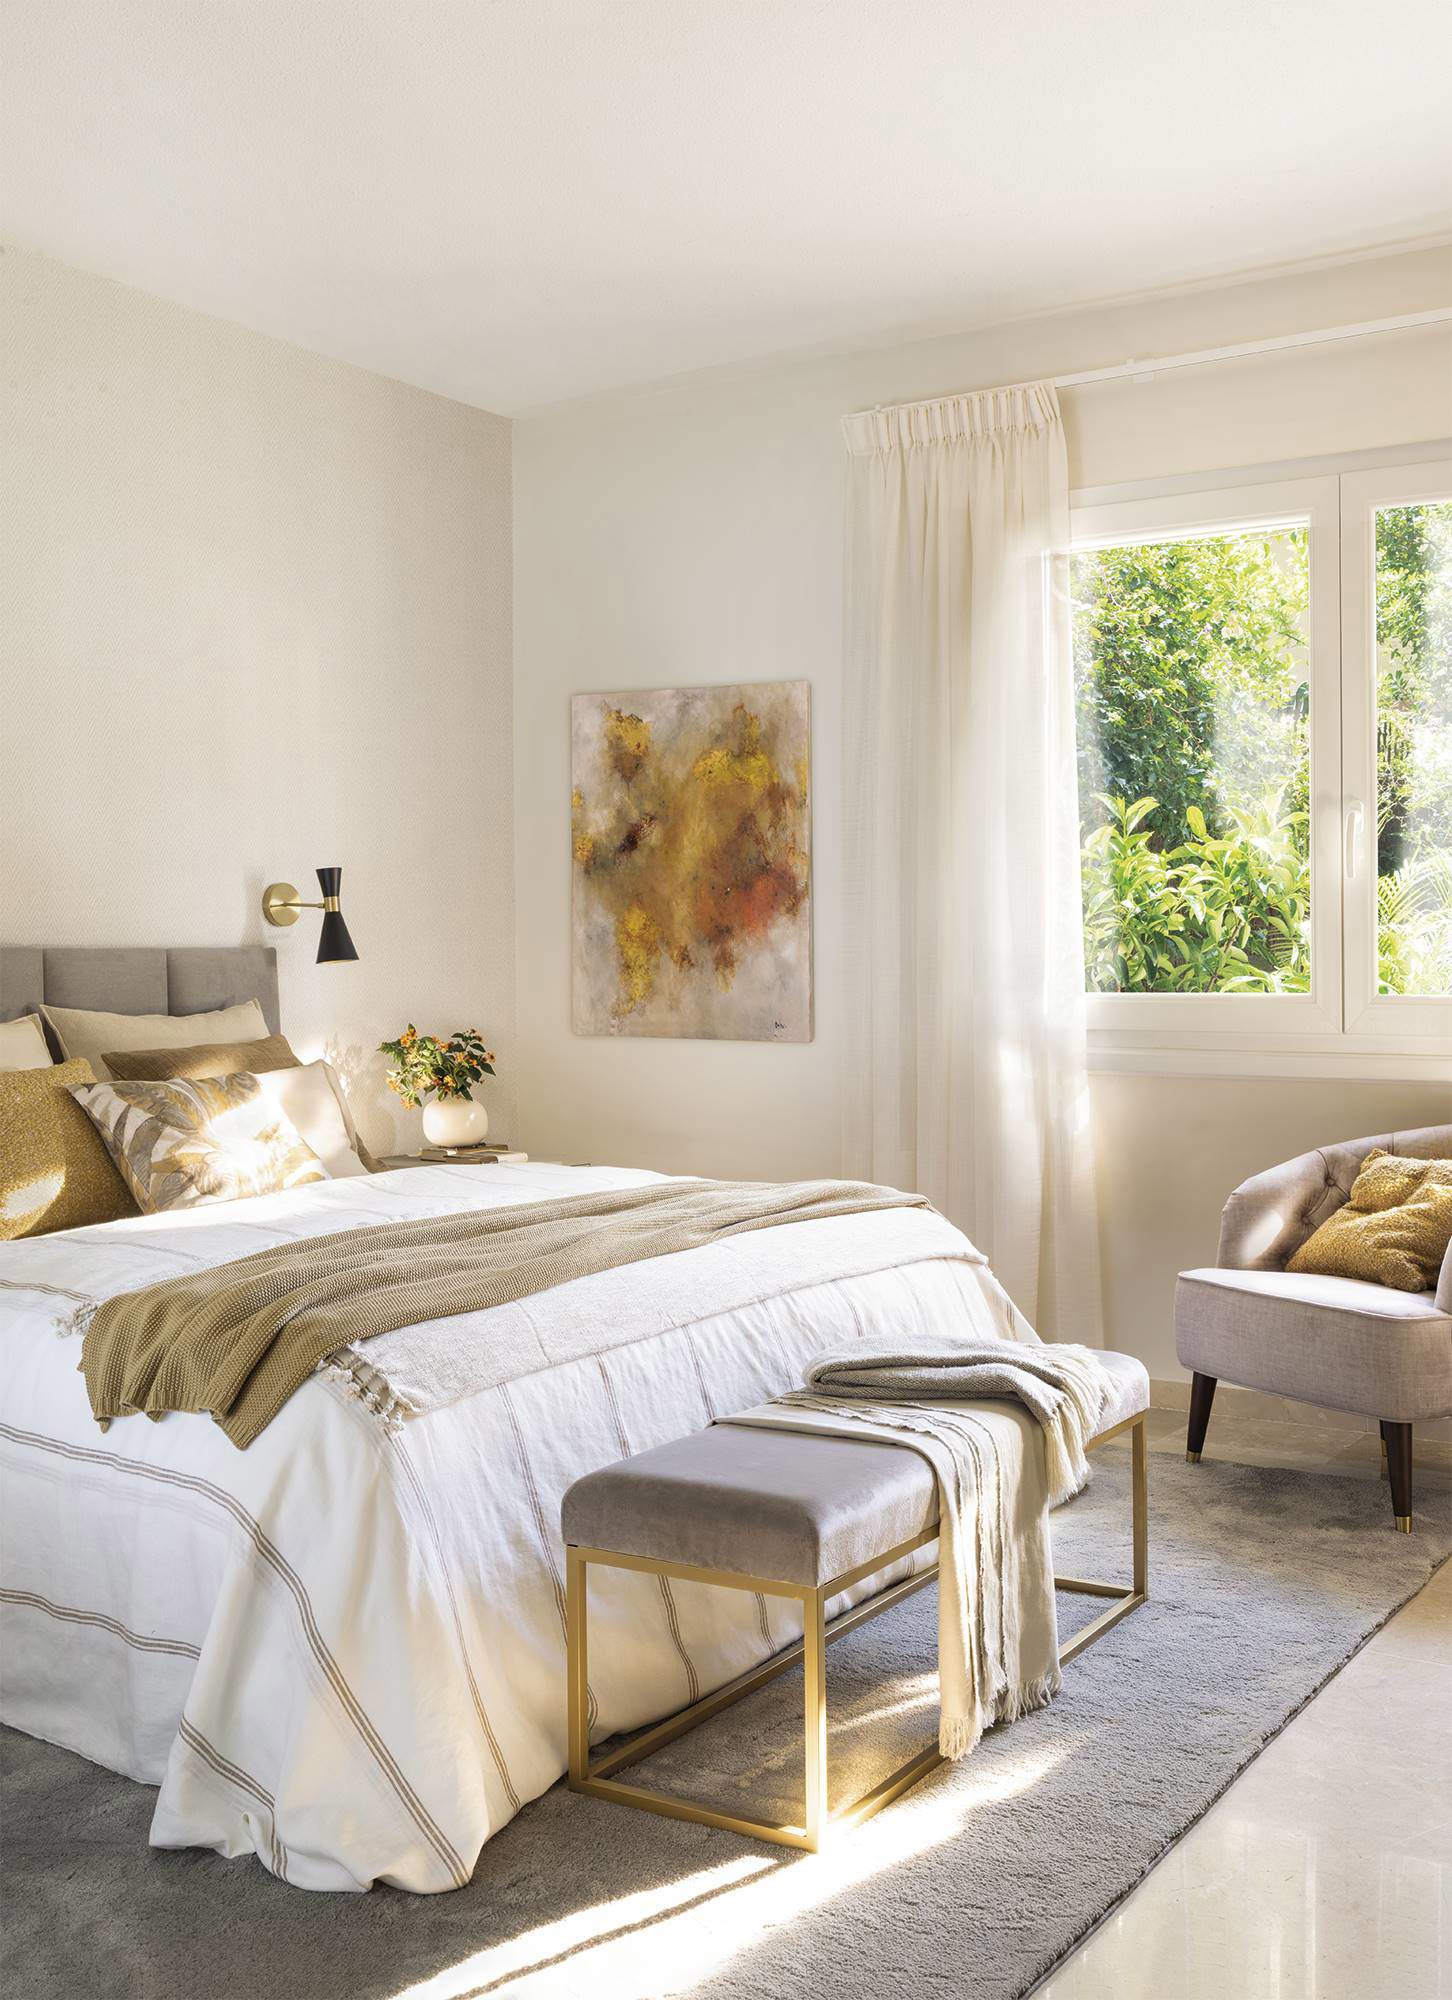 Dormitorio decorado en tonos blancos y dorados, luminoso, con banqueta al pie de la cama.